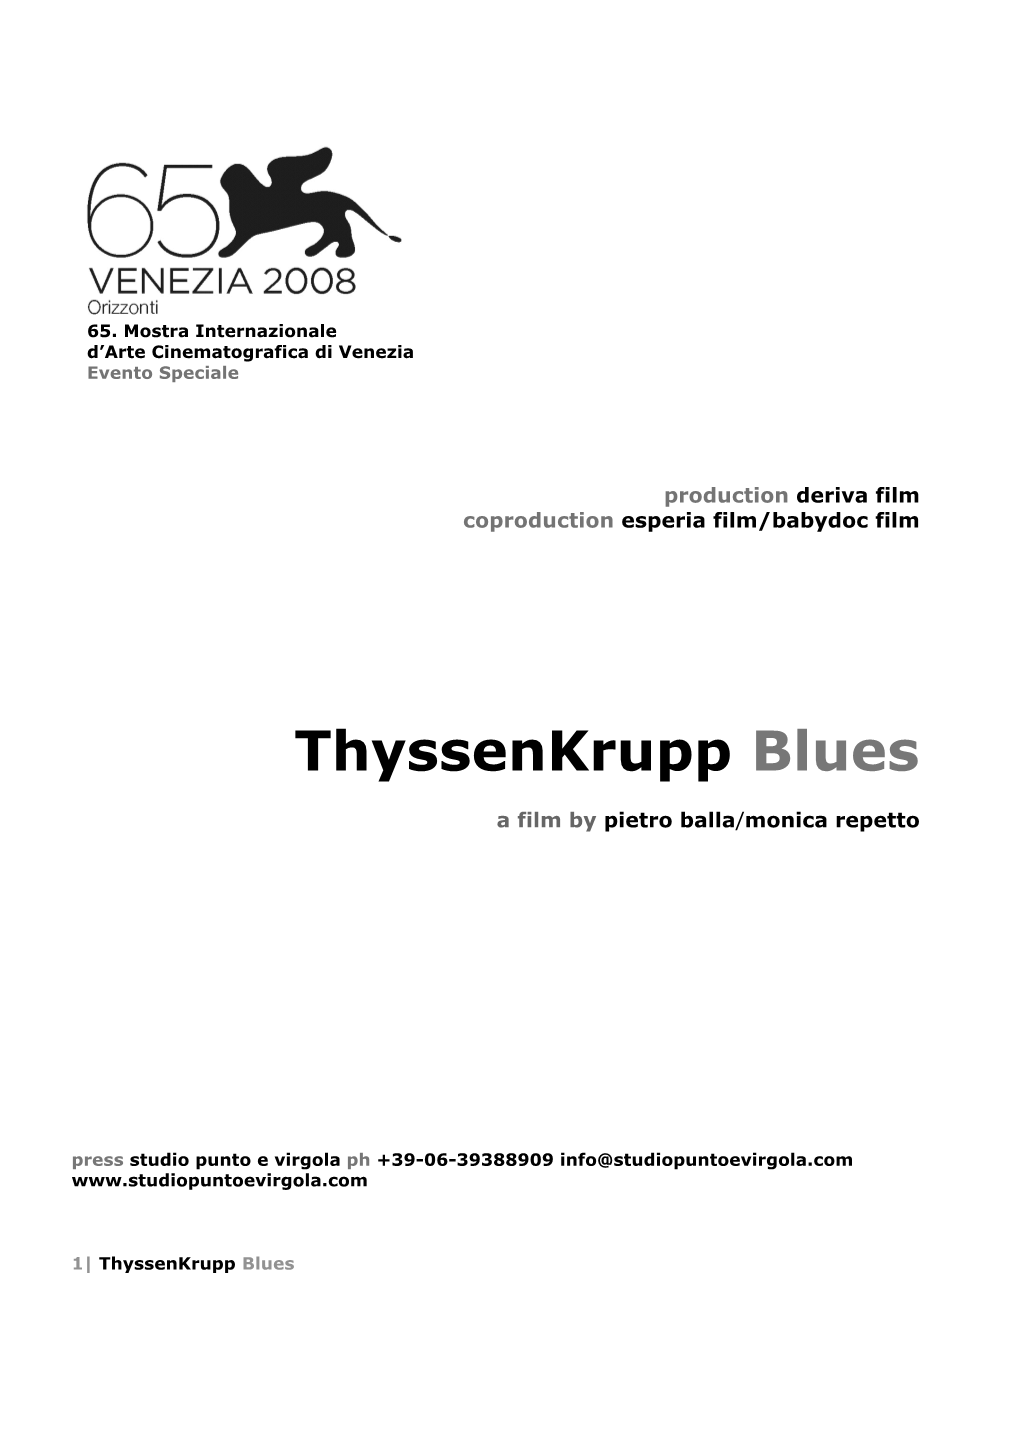 Thyssenkrupp Blues